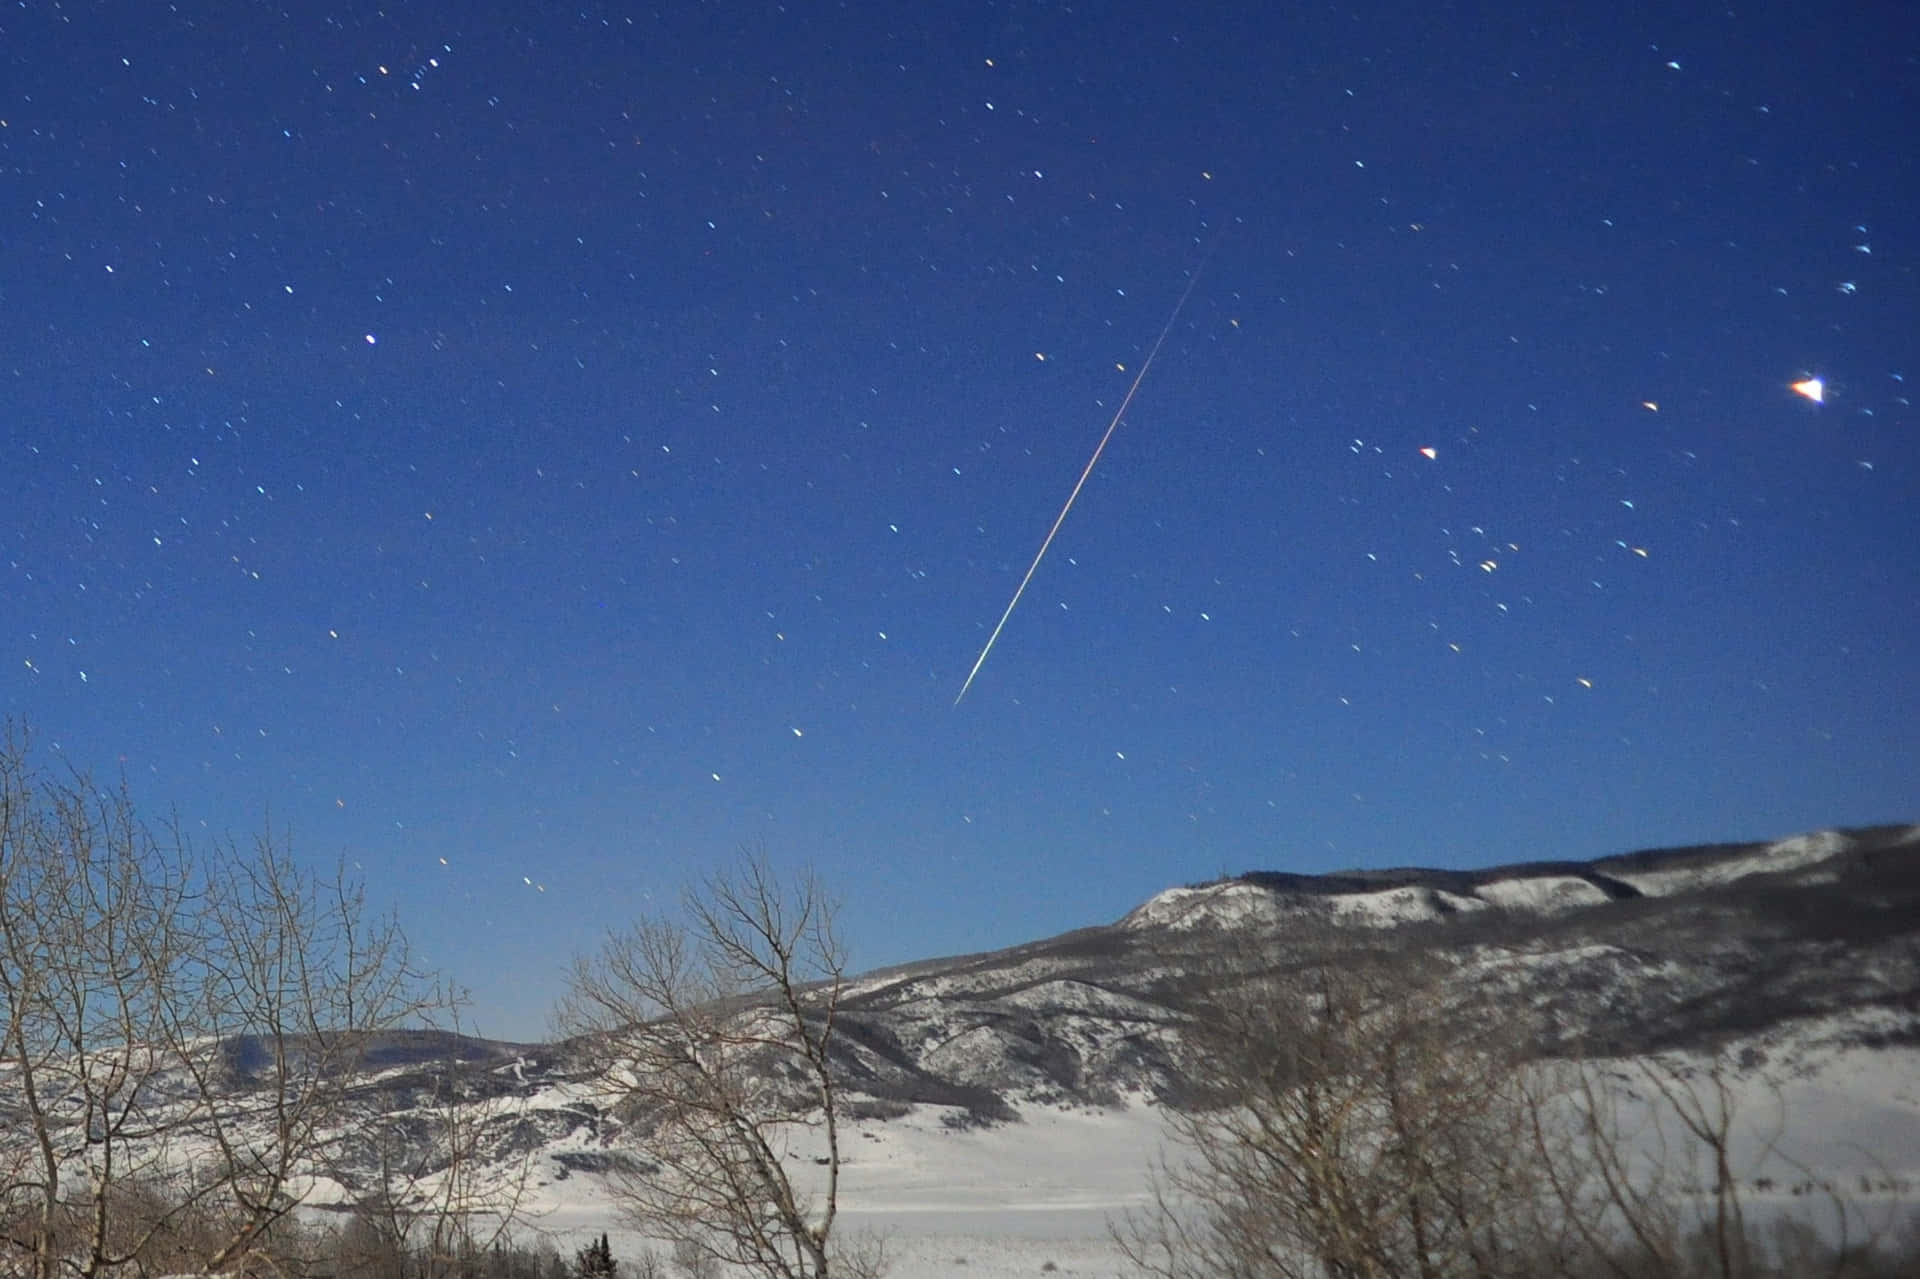 A Brilliant Meteor in the Night Sky